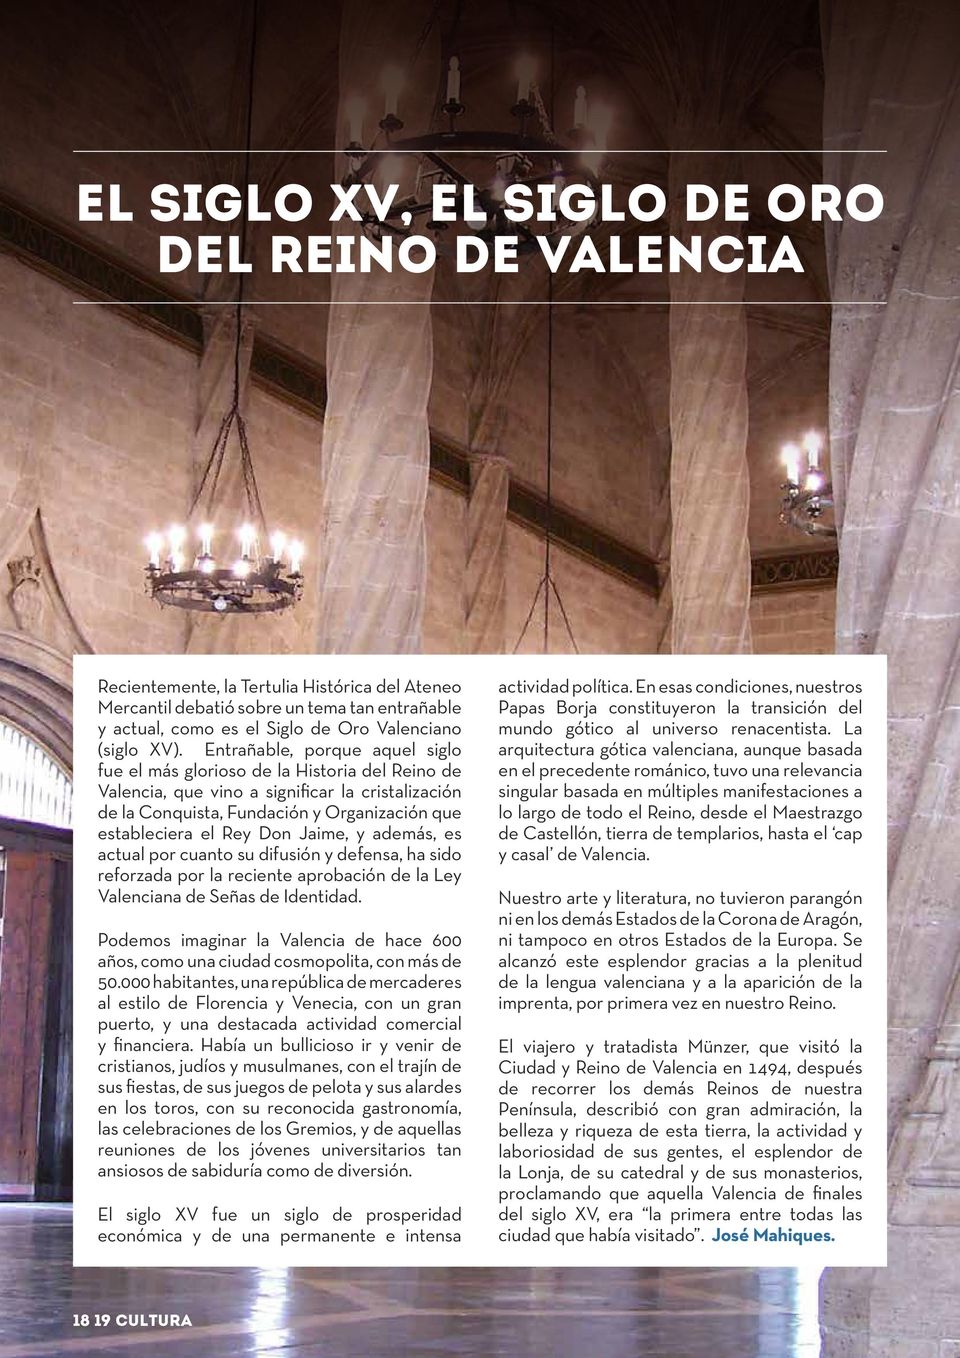 Don Jaime, y además, es actual por cuanto su difusión y defensa, ha sido reforzada por la reciente aprobación de la Ley Valenciana de Señas de Identidad.